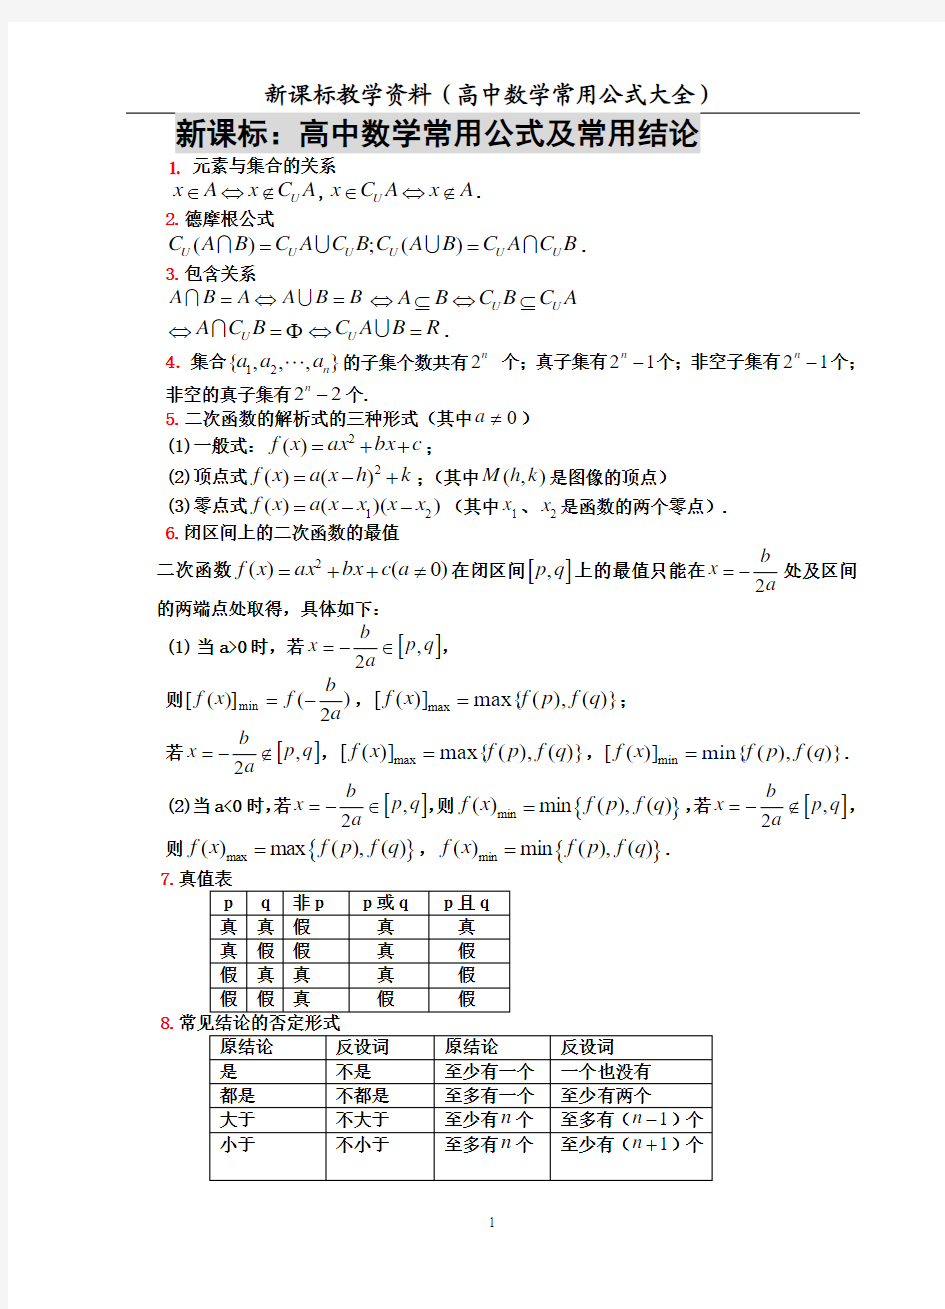 高中数学公式及结论大全(新编)